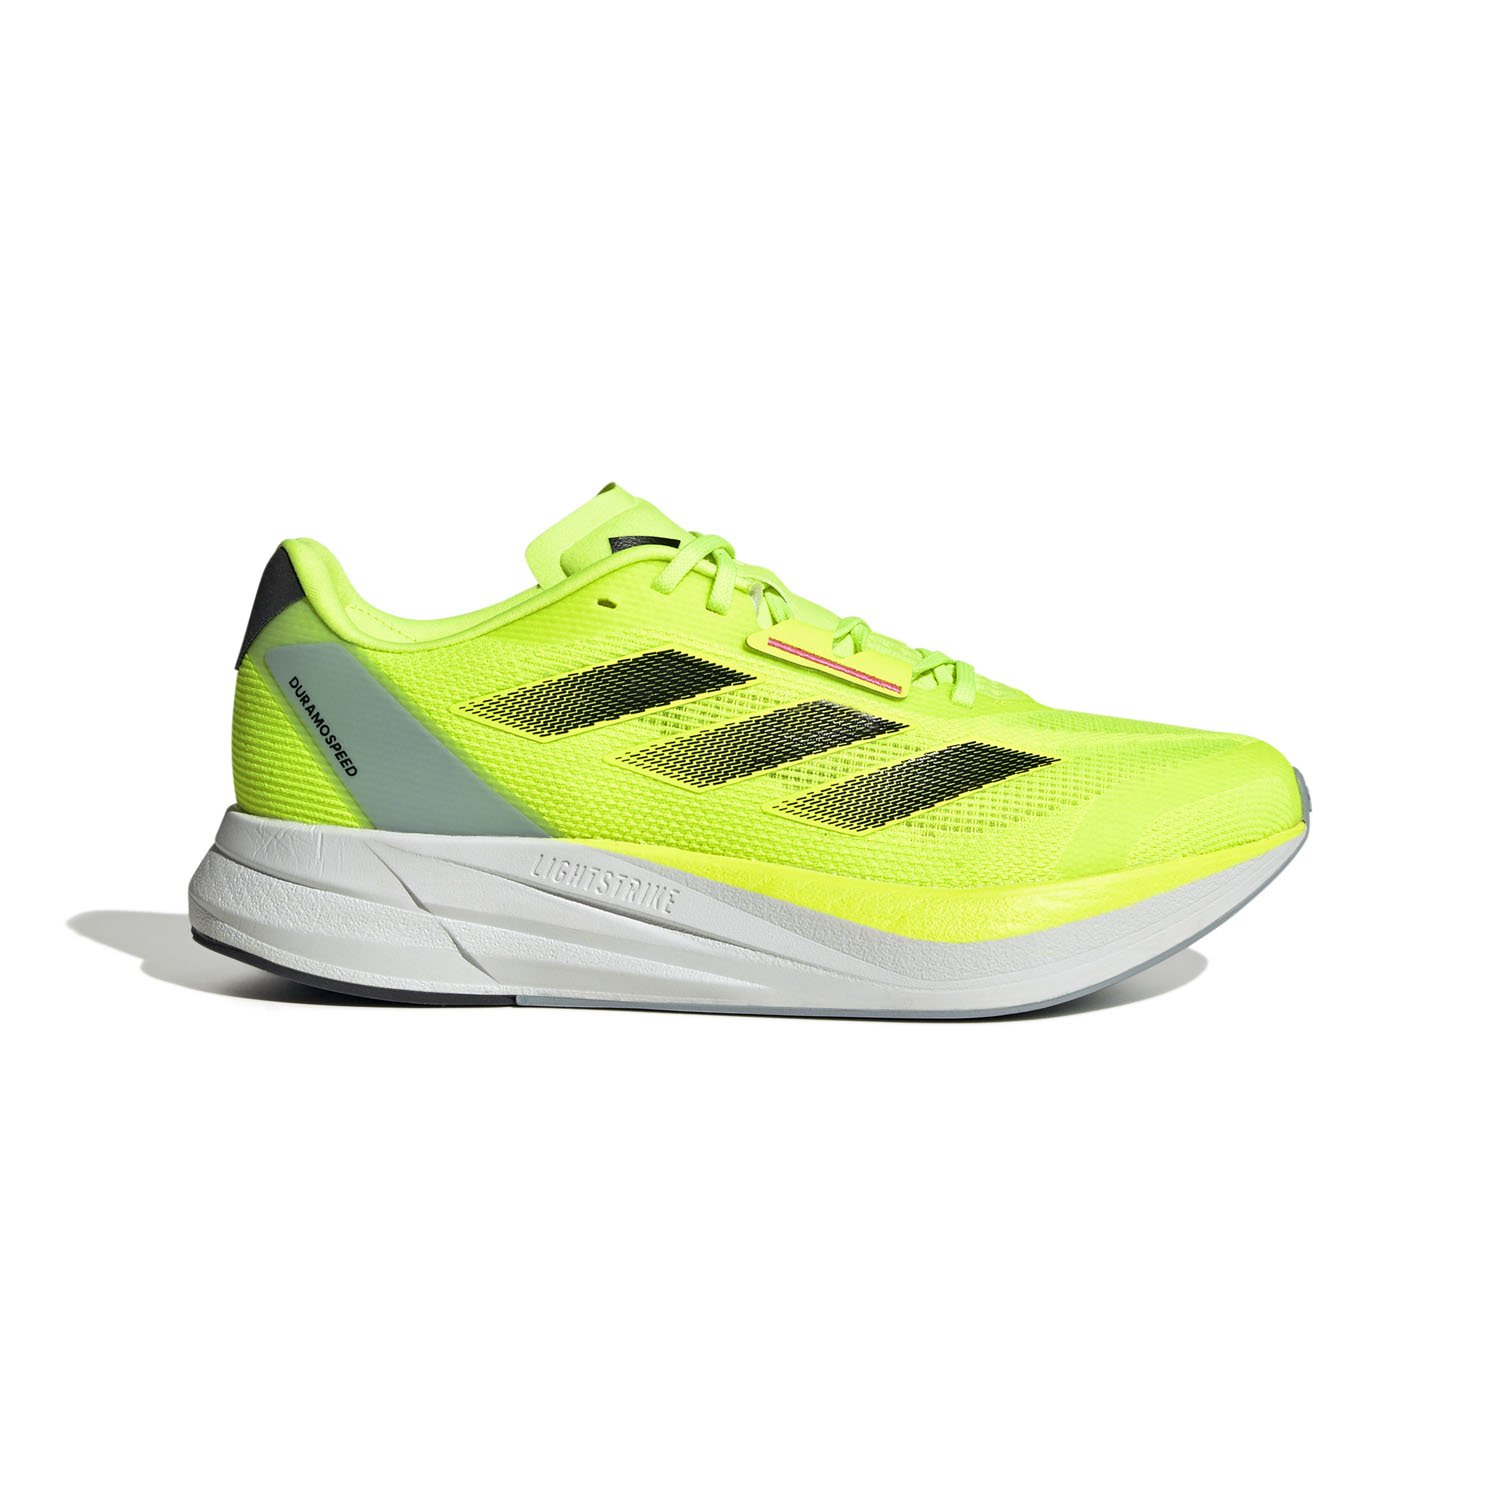 Adidas Duramo Speed Erkek Koşu Ayakkabısı - Sarı - 1